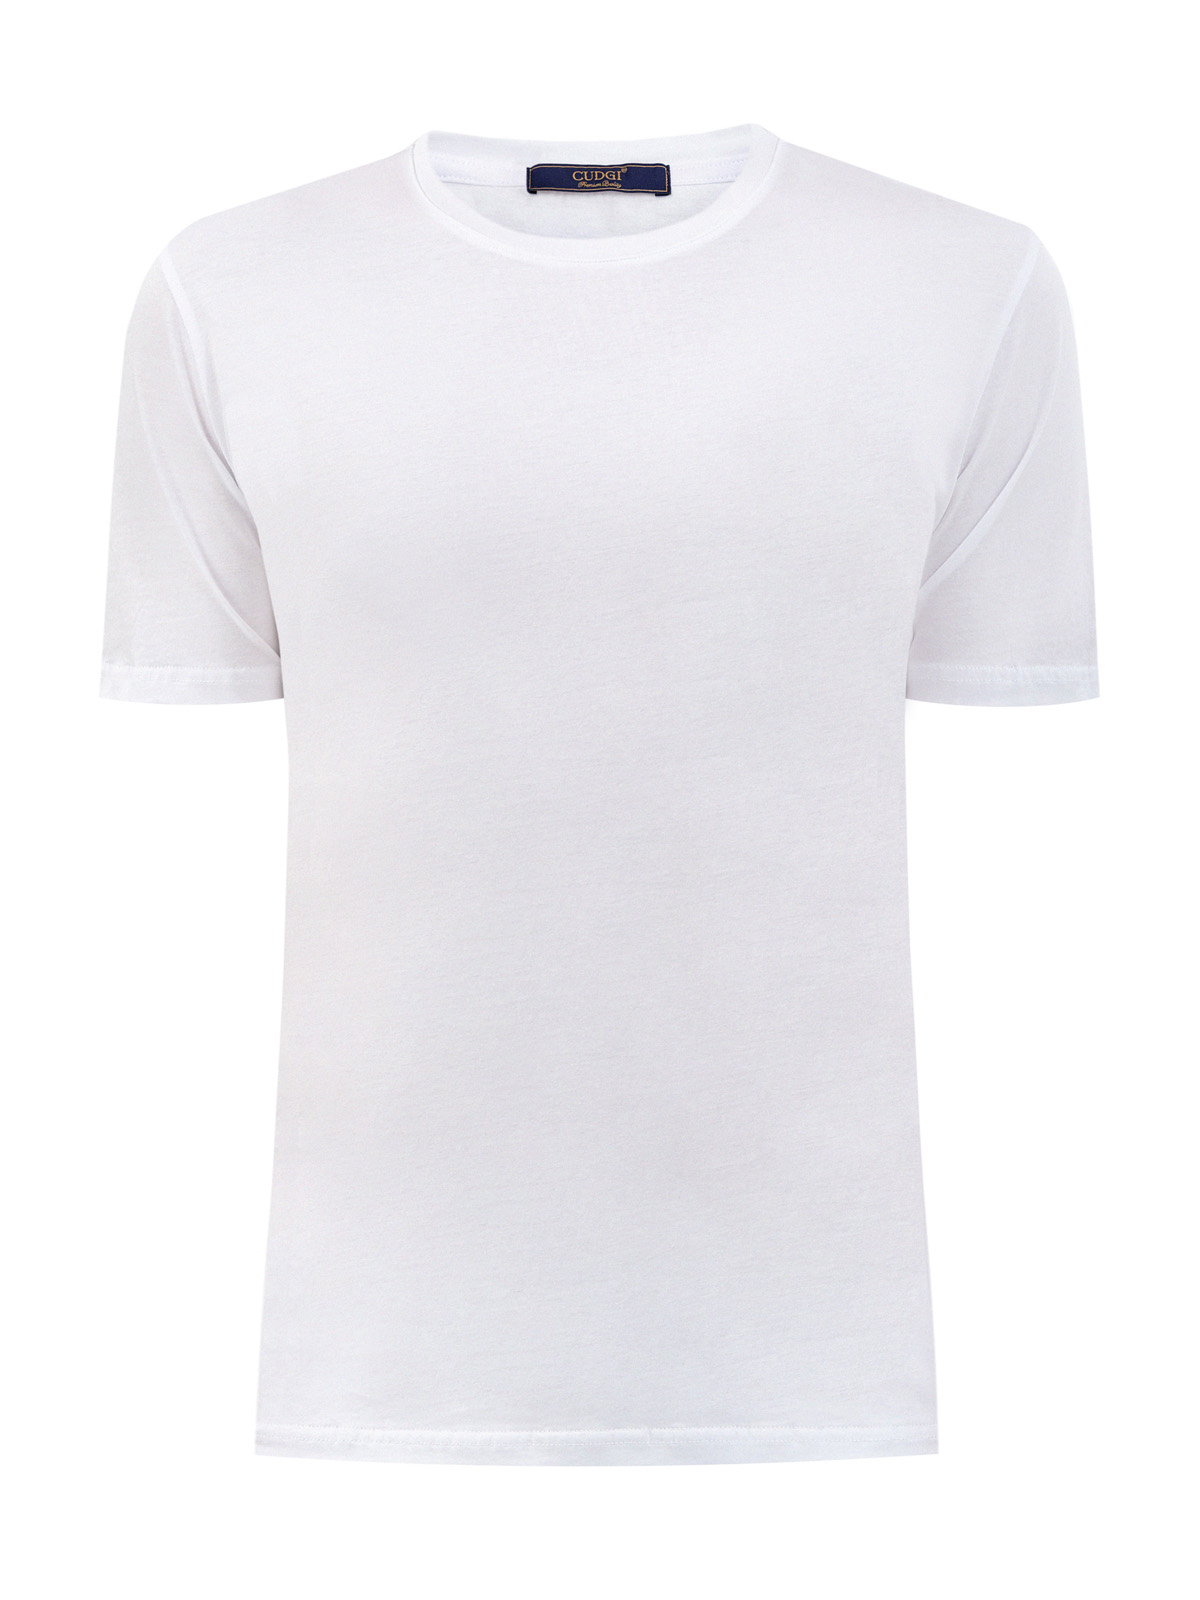 Белая футболка из гладкого хлопка джерси CUDGI, цвет белый, размер L;XL;2XL;M - фото 1